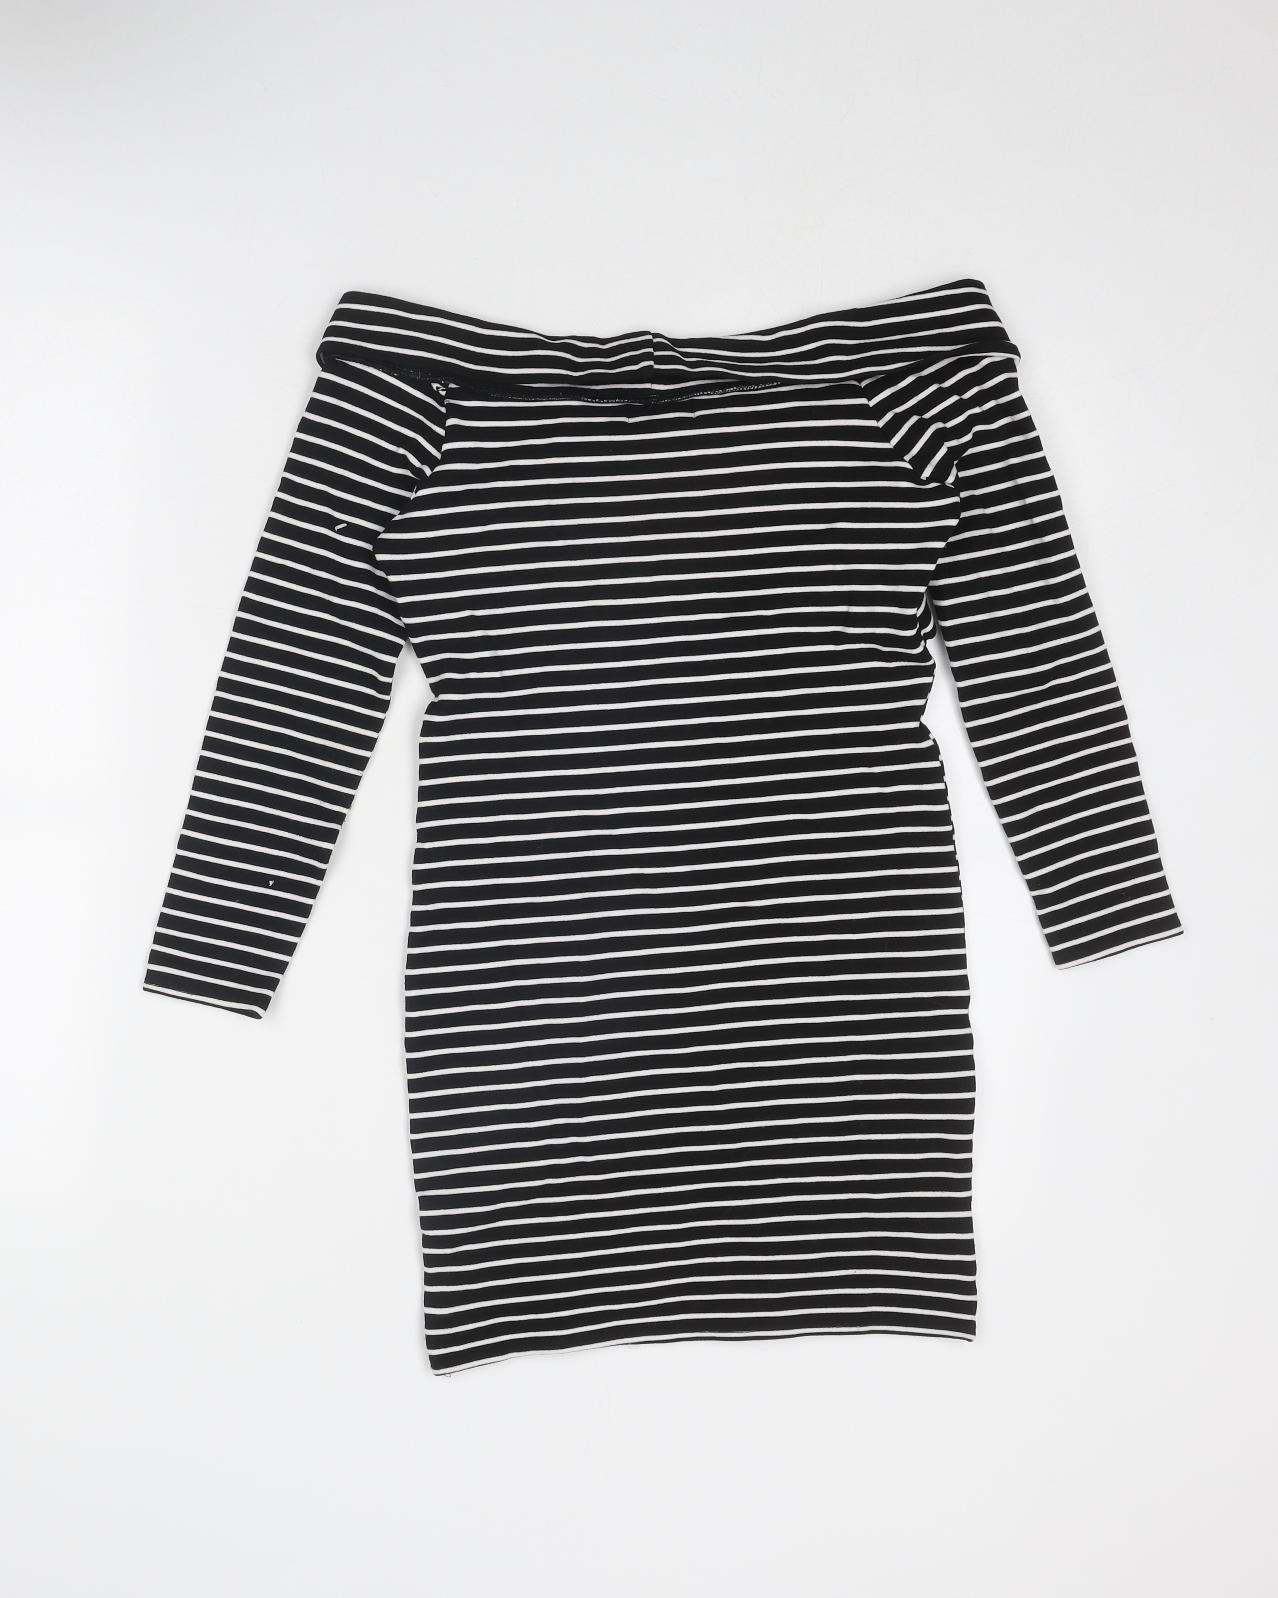 Dotti Womens Black Striped Viscose Bodycon Size 10 Off the Shoulder Pullover